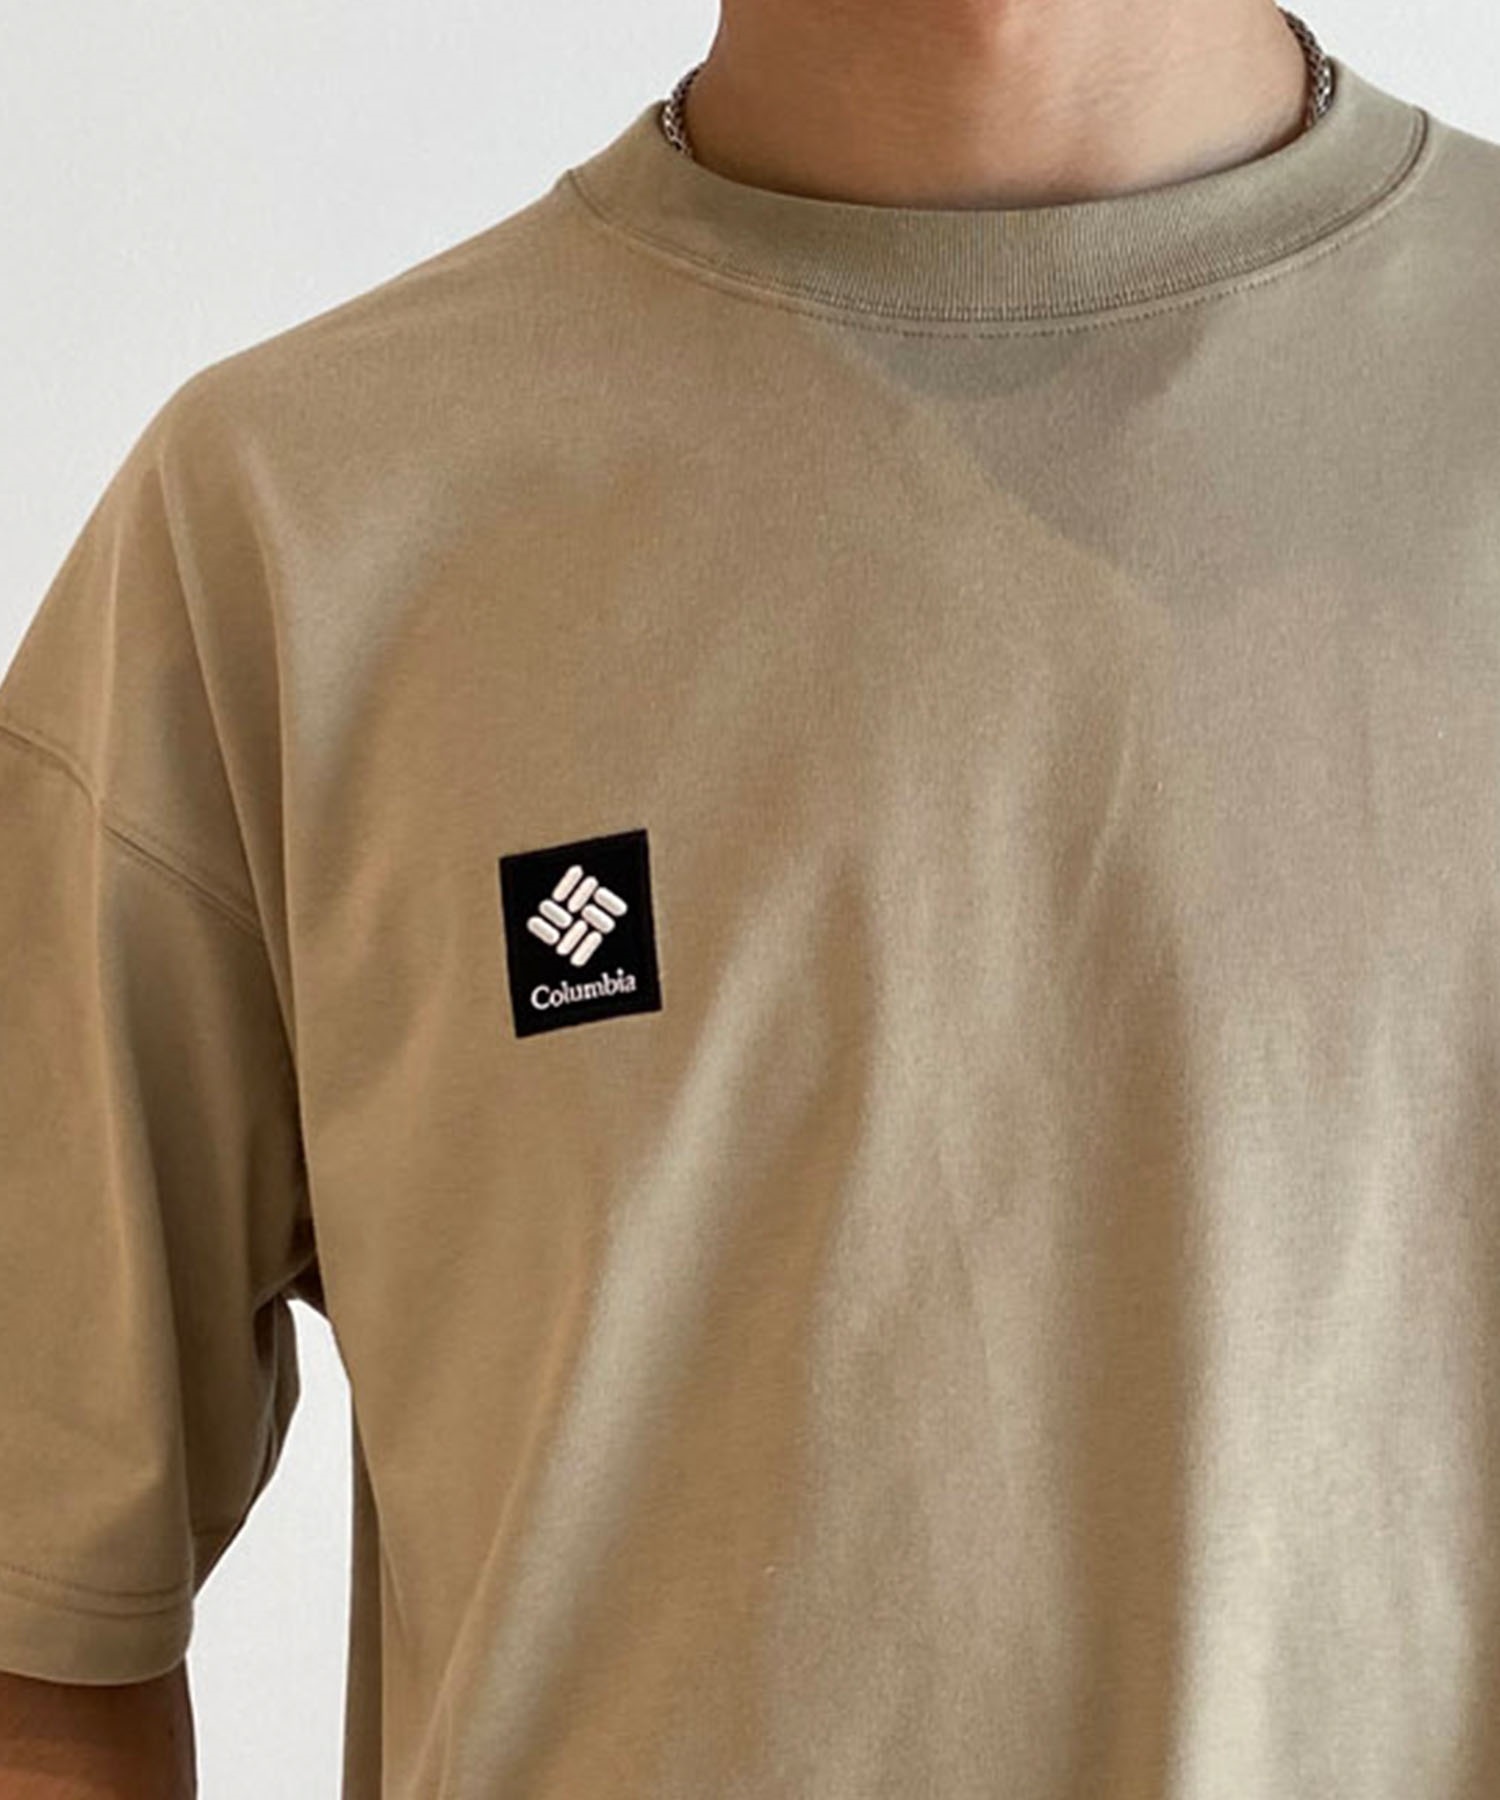 【ムラサキスポーツ限定】columbia コロンビア メンズ オーバーサイズ Tシャツ 半袖T UVケア バックプリント PM4502(265-M)